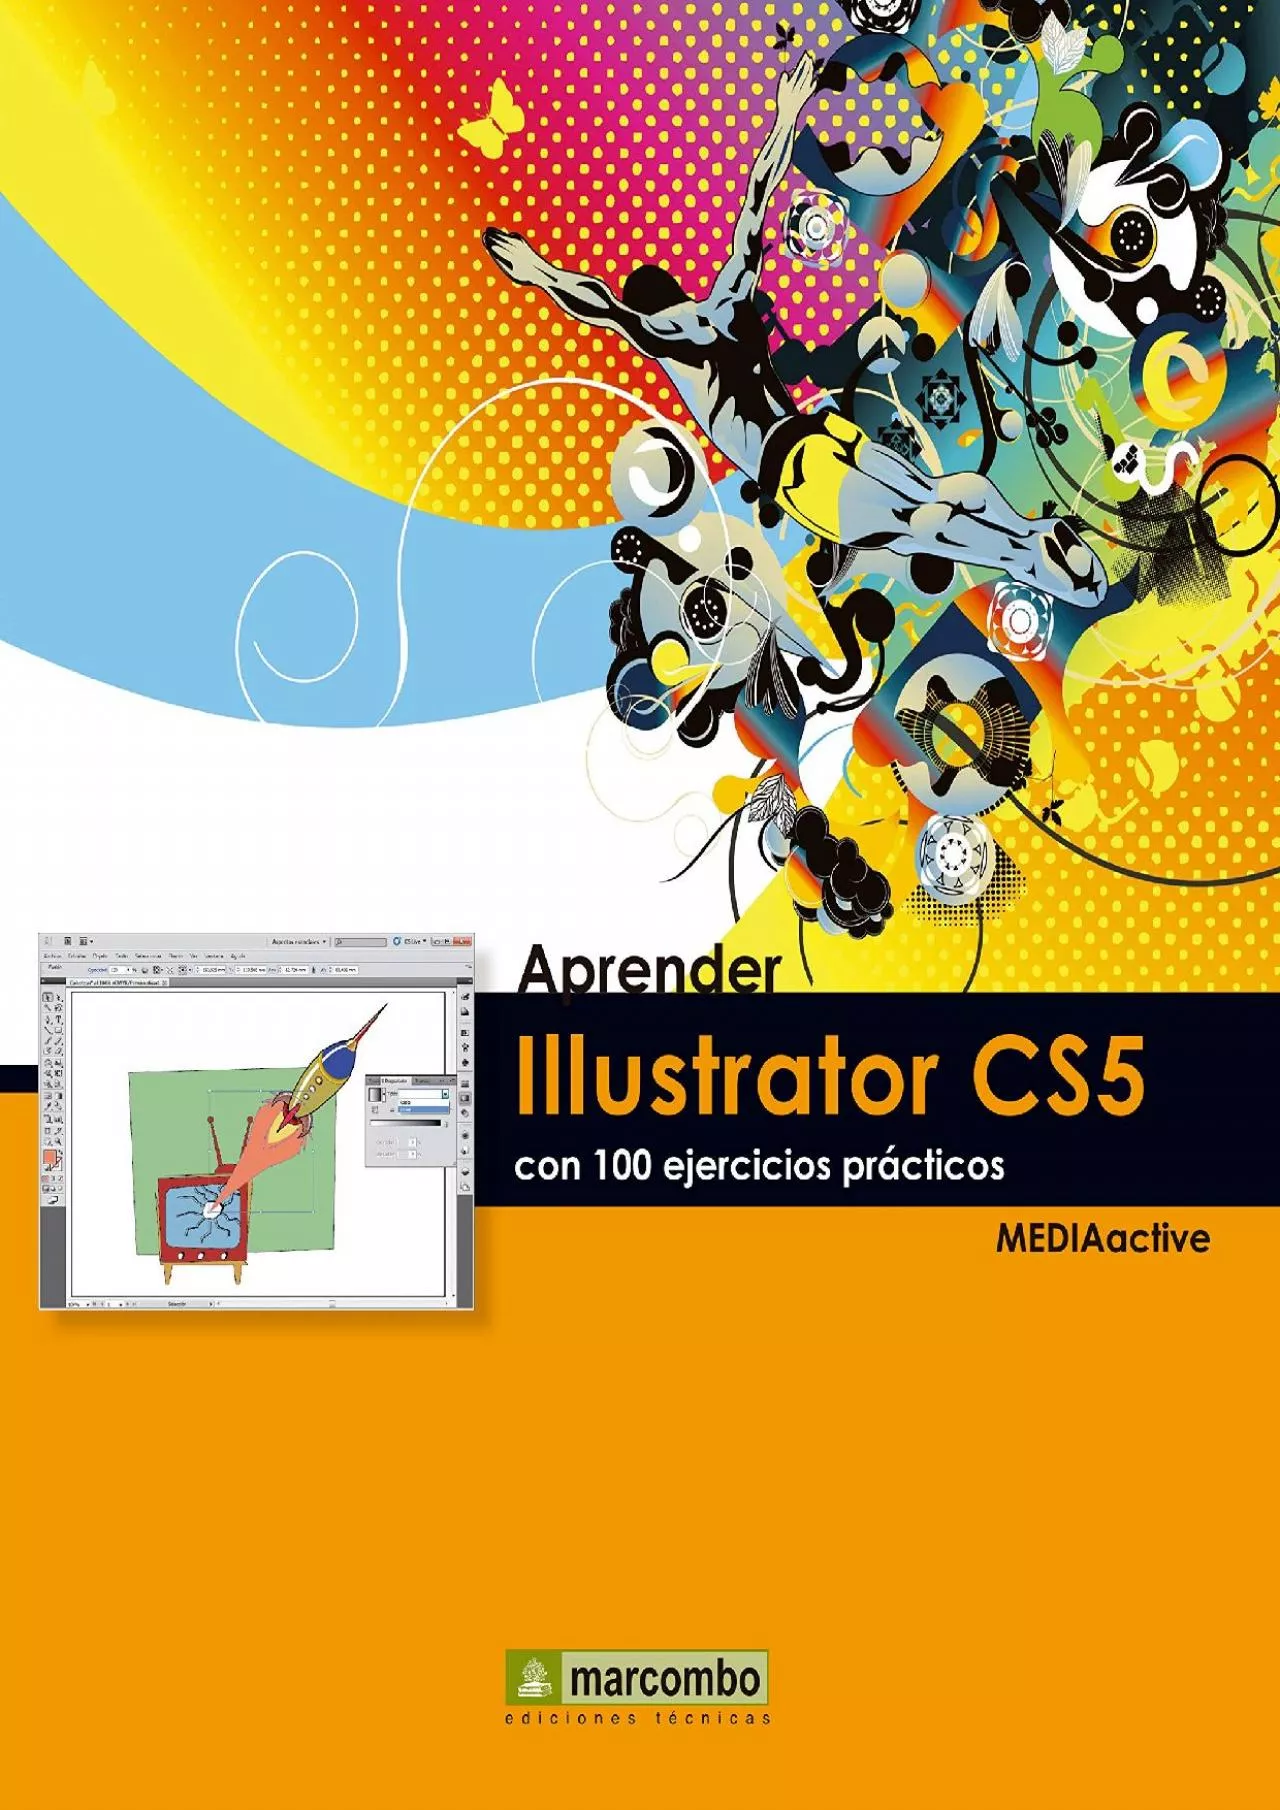 (READ)-Aprender Illustrator CS5 con 100 ejercicios prácticos (Aprender...con 100 ejercicios